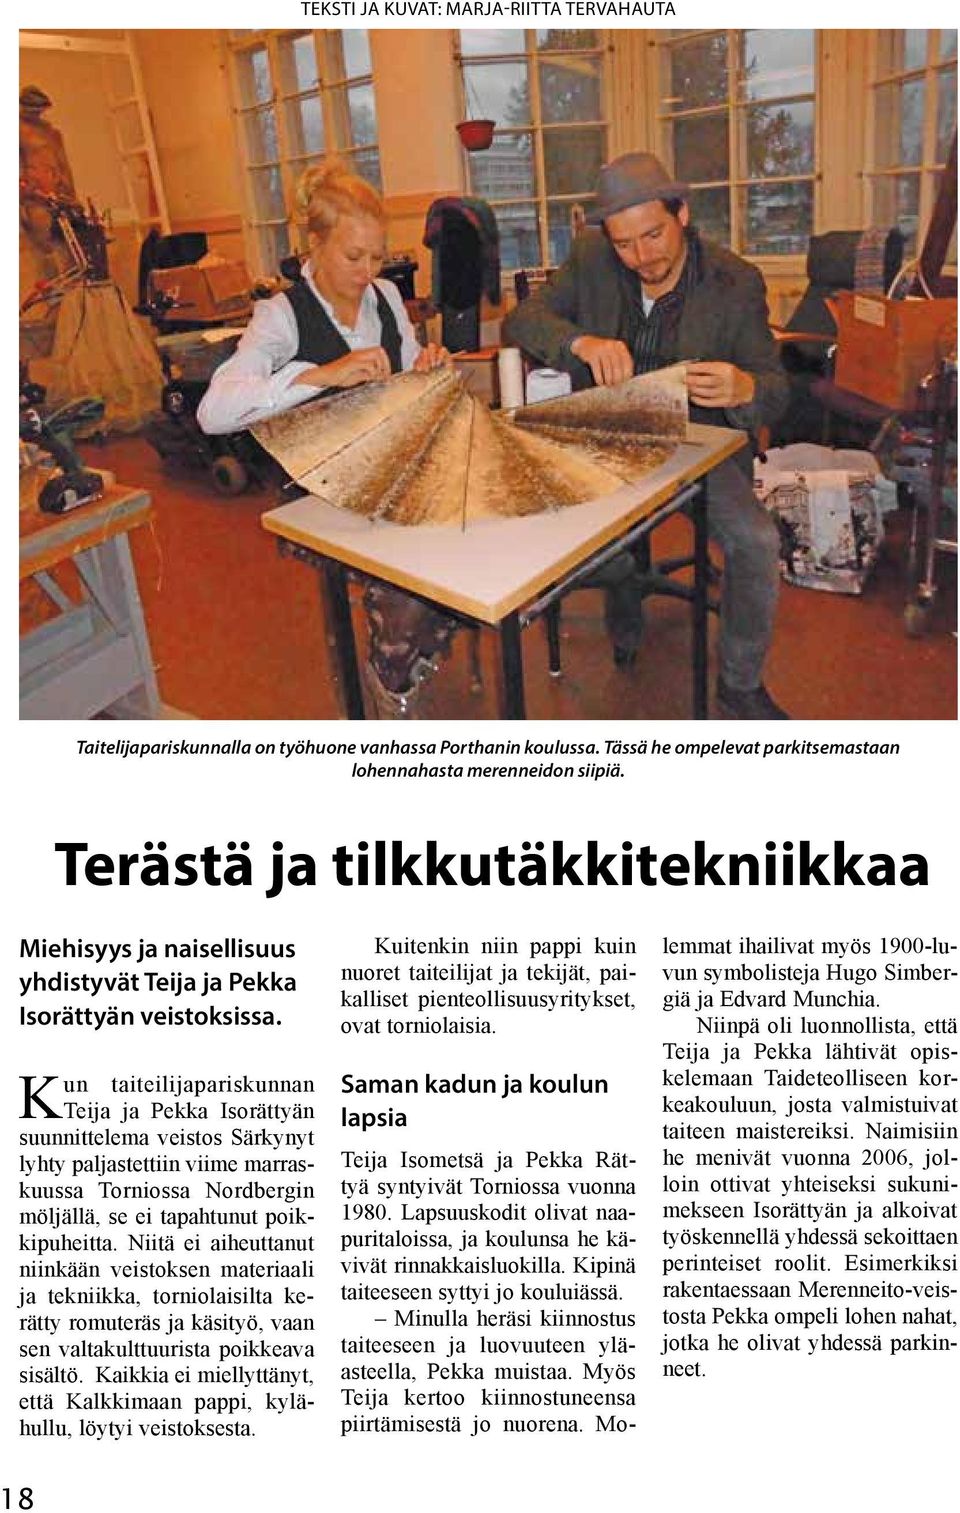 Kun taiteilijapariskunnan Teija ja Pekka Isorättyän suunnittelema veistos Särkynyt lyhty paljastettiin viime marraskuussa Torniossa Nordbergin möljällä, se ei tapahtunut poikkipuheitta.